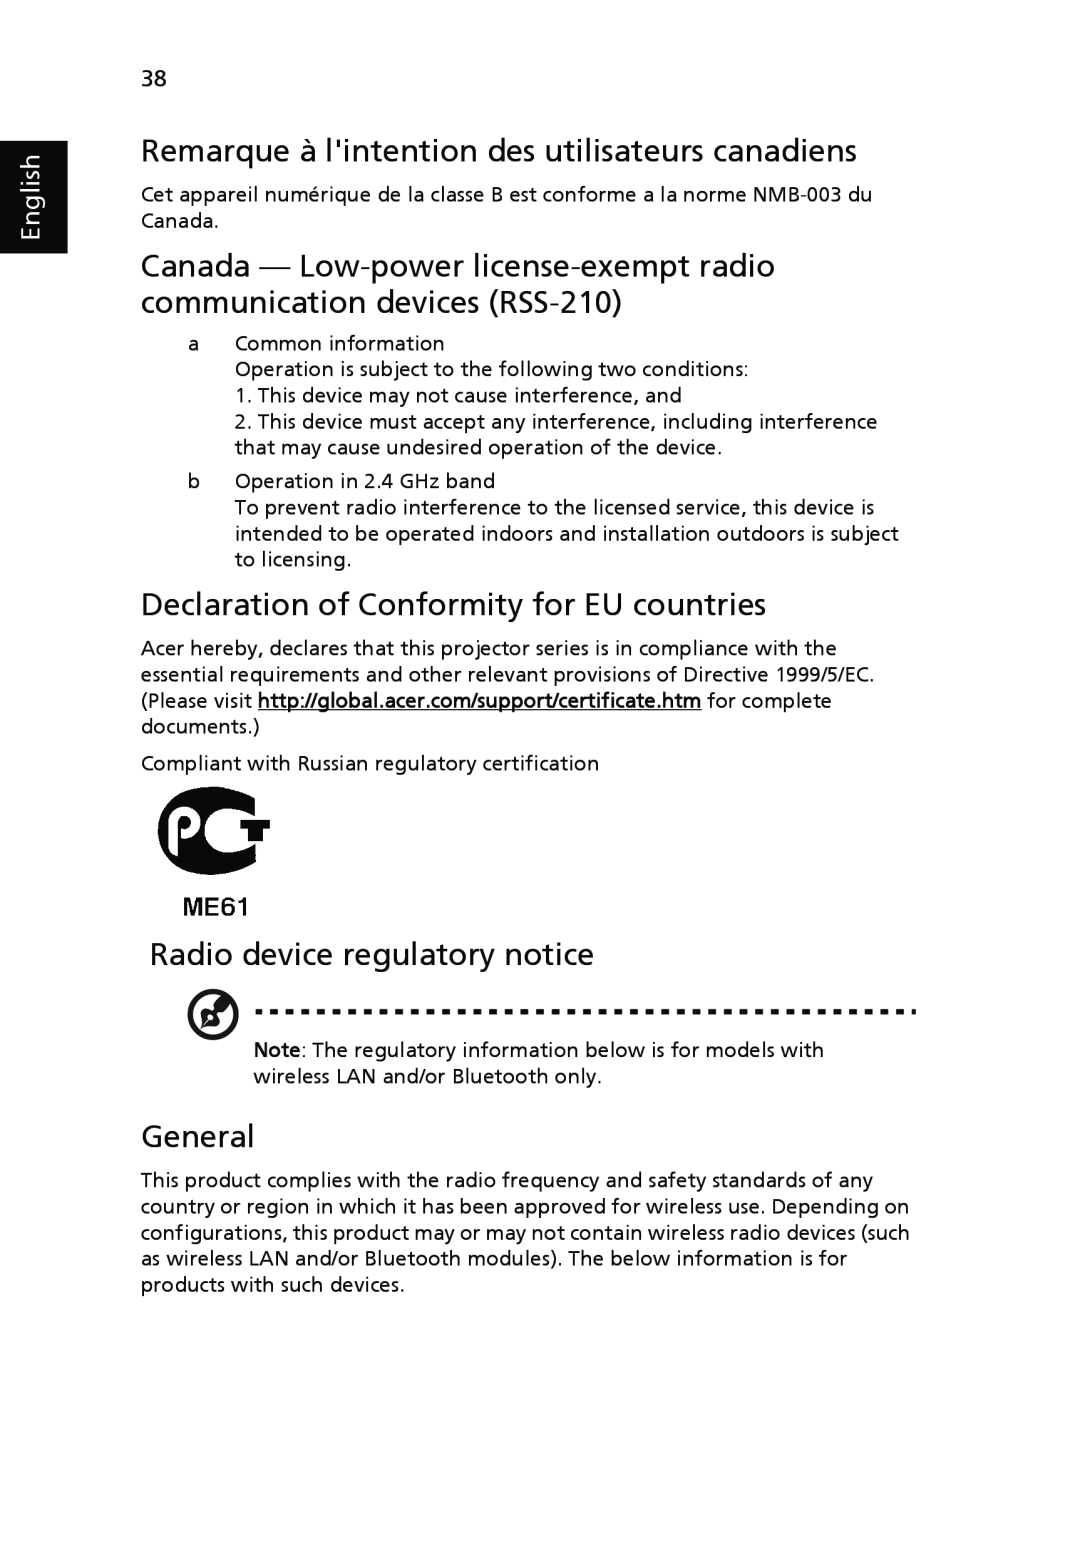 Acer H5350 Remarque à lintention des utilisateurs canadiens, Declaration of Conformity for EU countries, General, English 